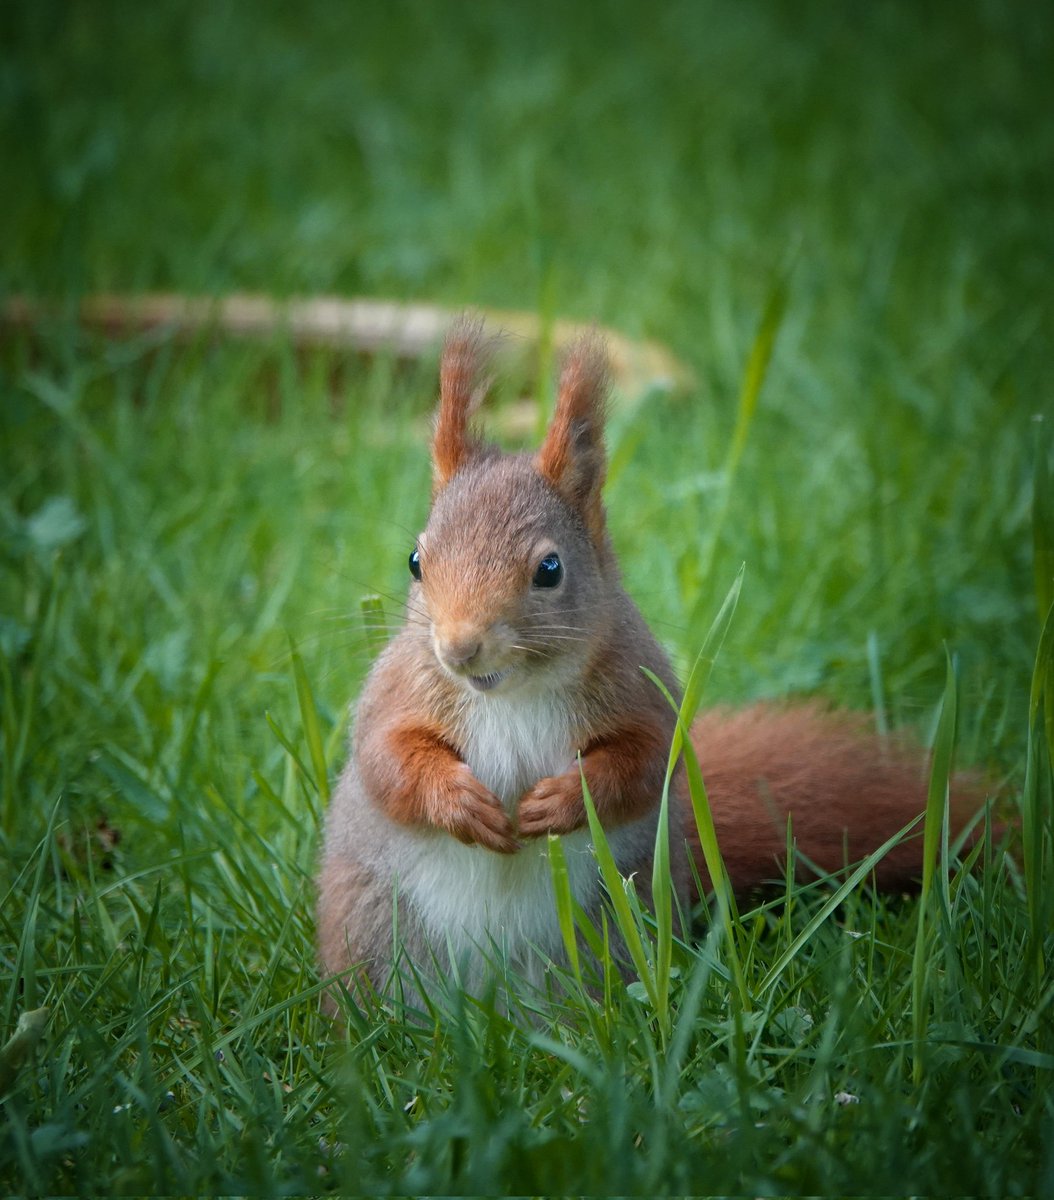 Een blij eekhoorntje in de tuin vanochtend! Daar word ik ook blij van! 🐿😃🌿🤎 Fijne dag!🙋‍♀️ #tuintweet #squirrel